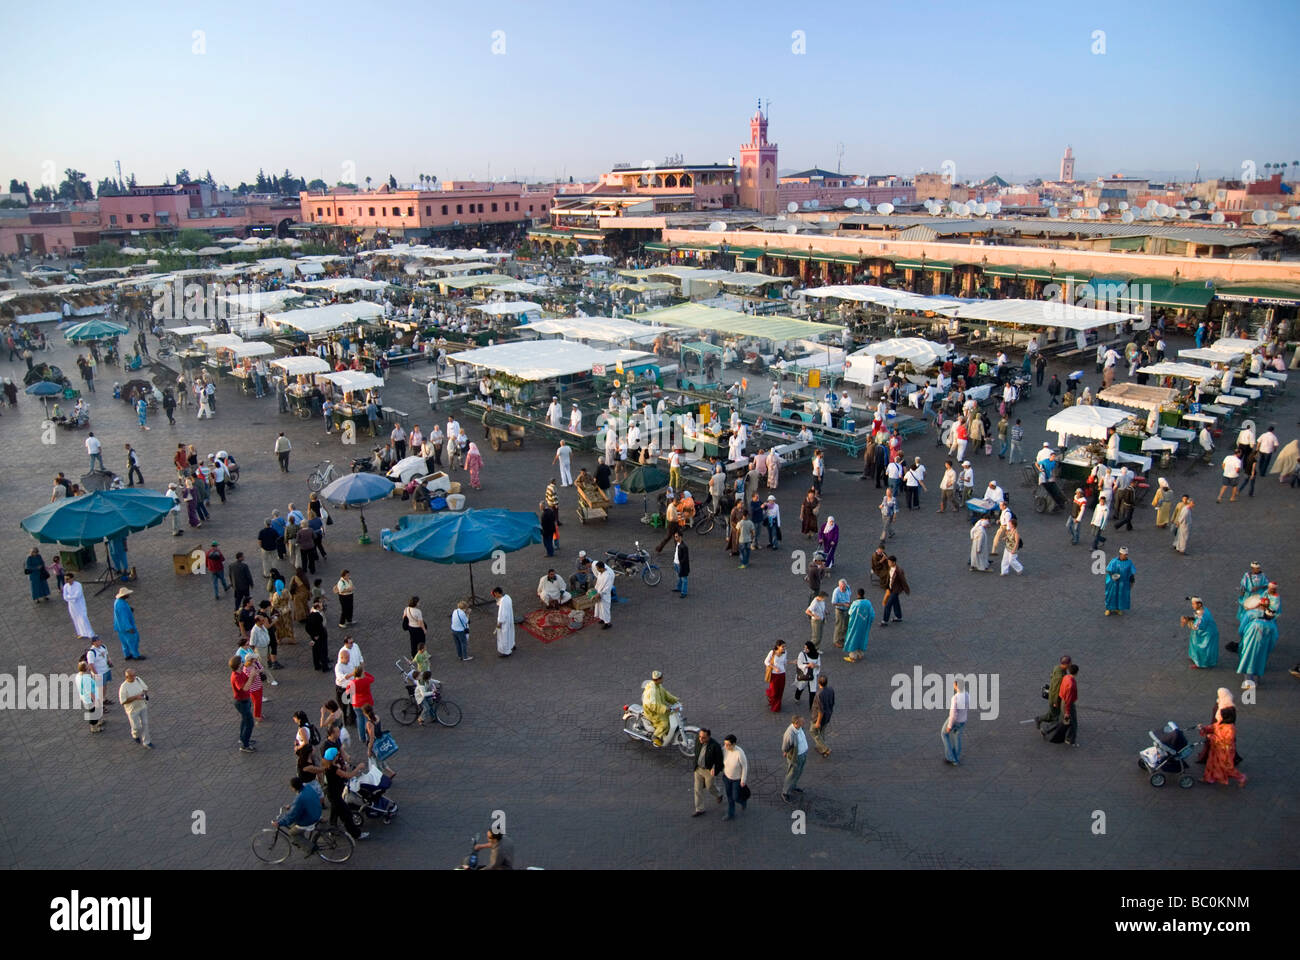 La place Djema El Fna marrakech maroc marché au crépuscule Banque D'Images